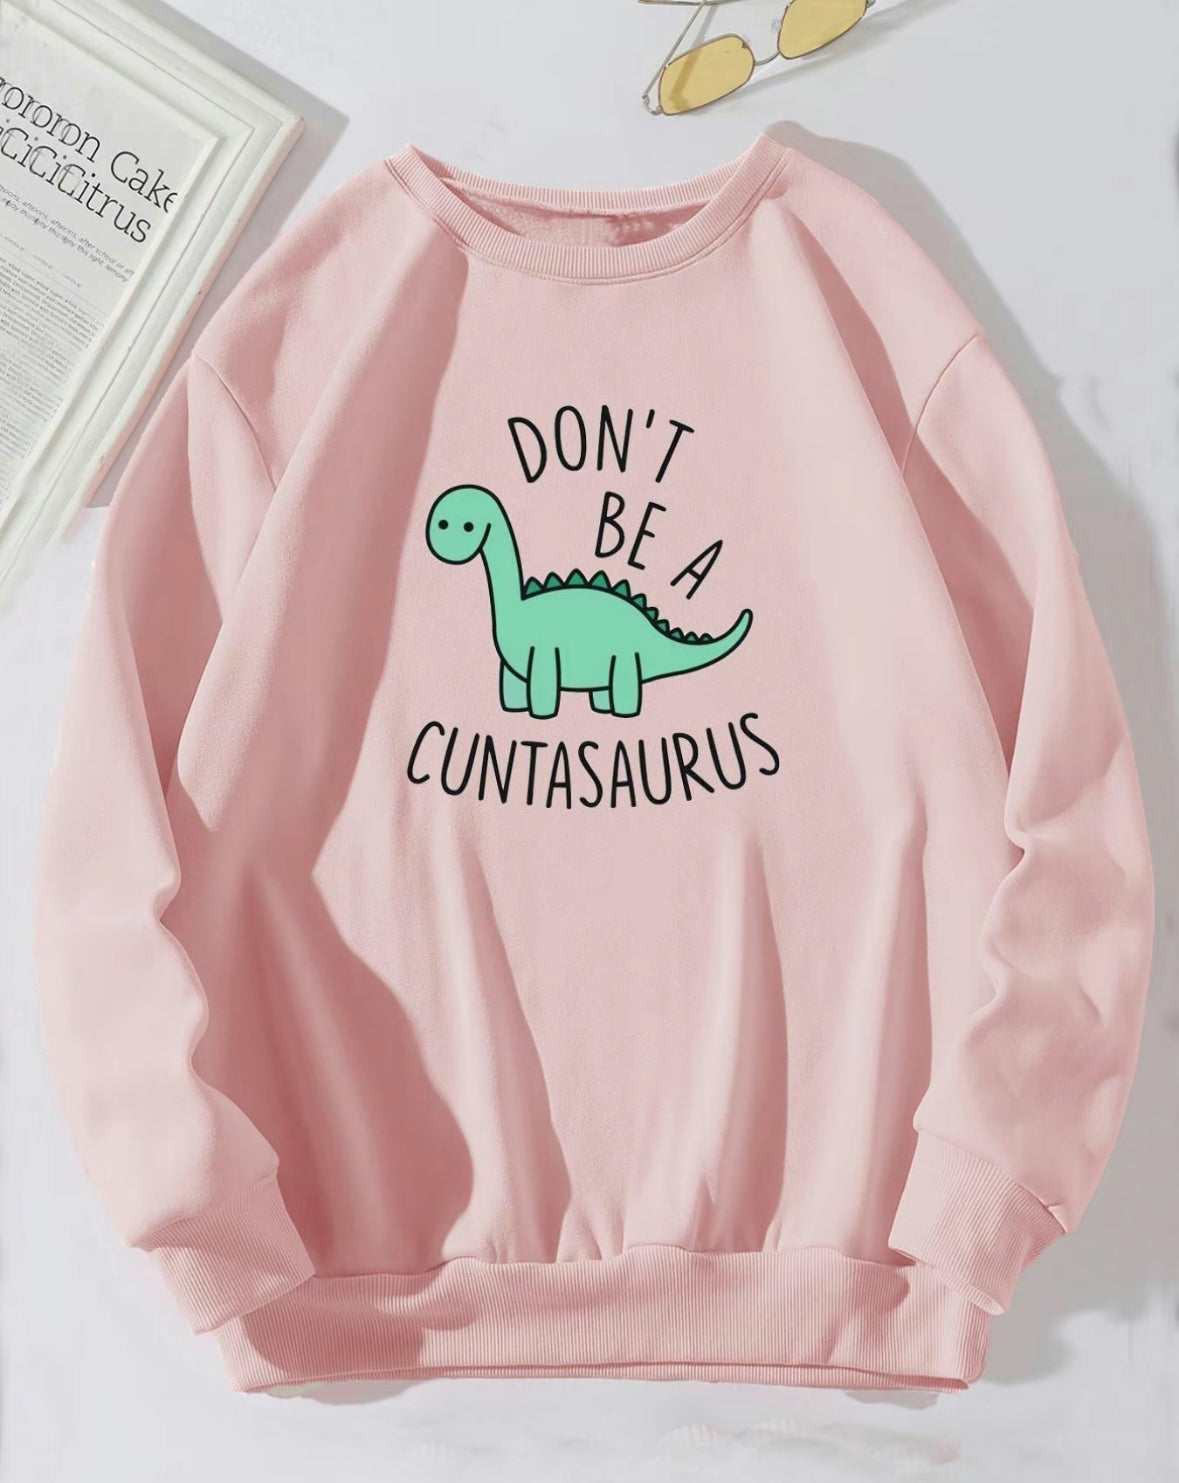 Cuntasaurus Sweatshirt